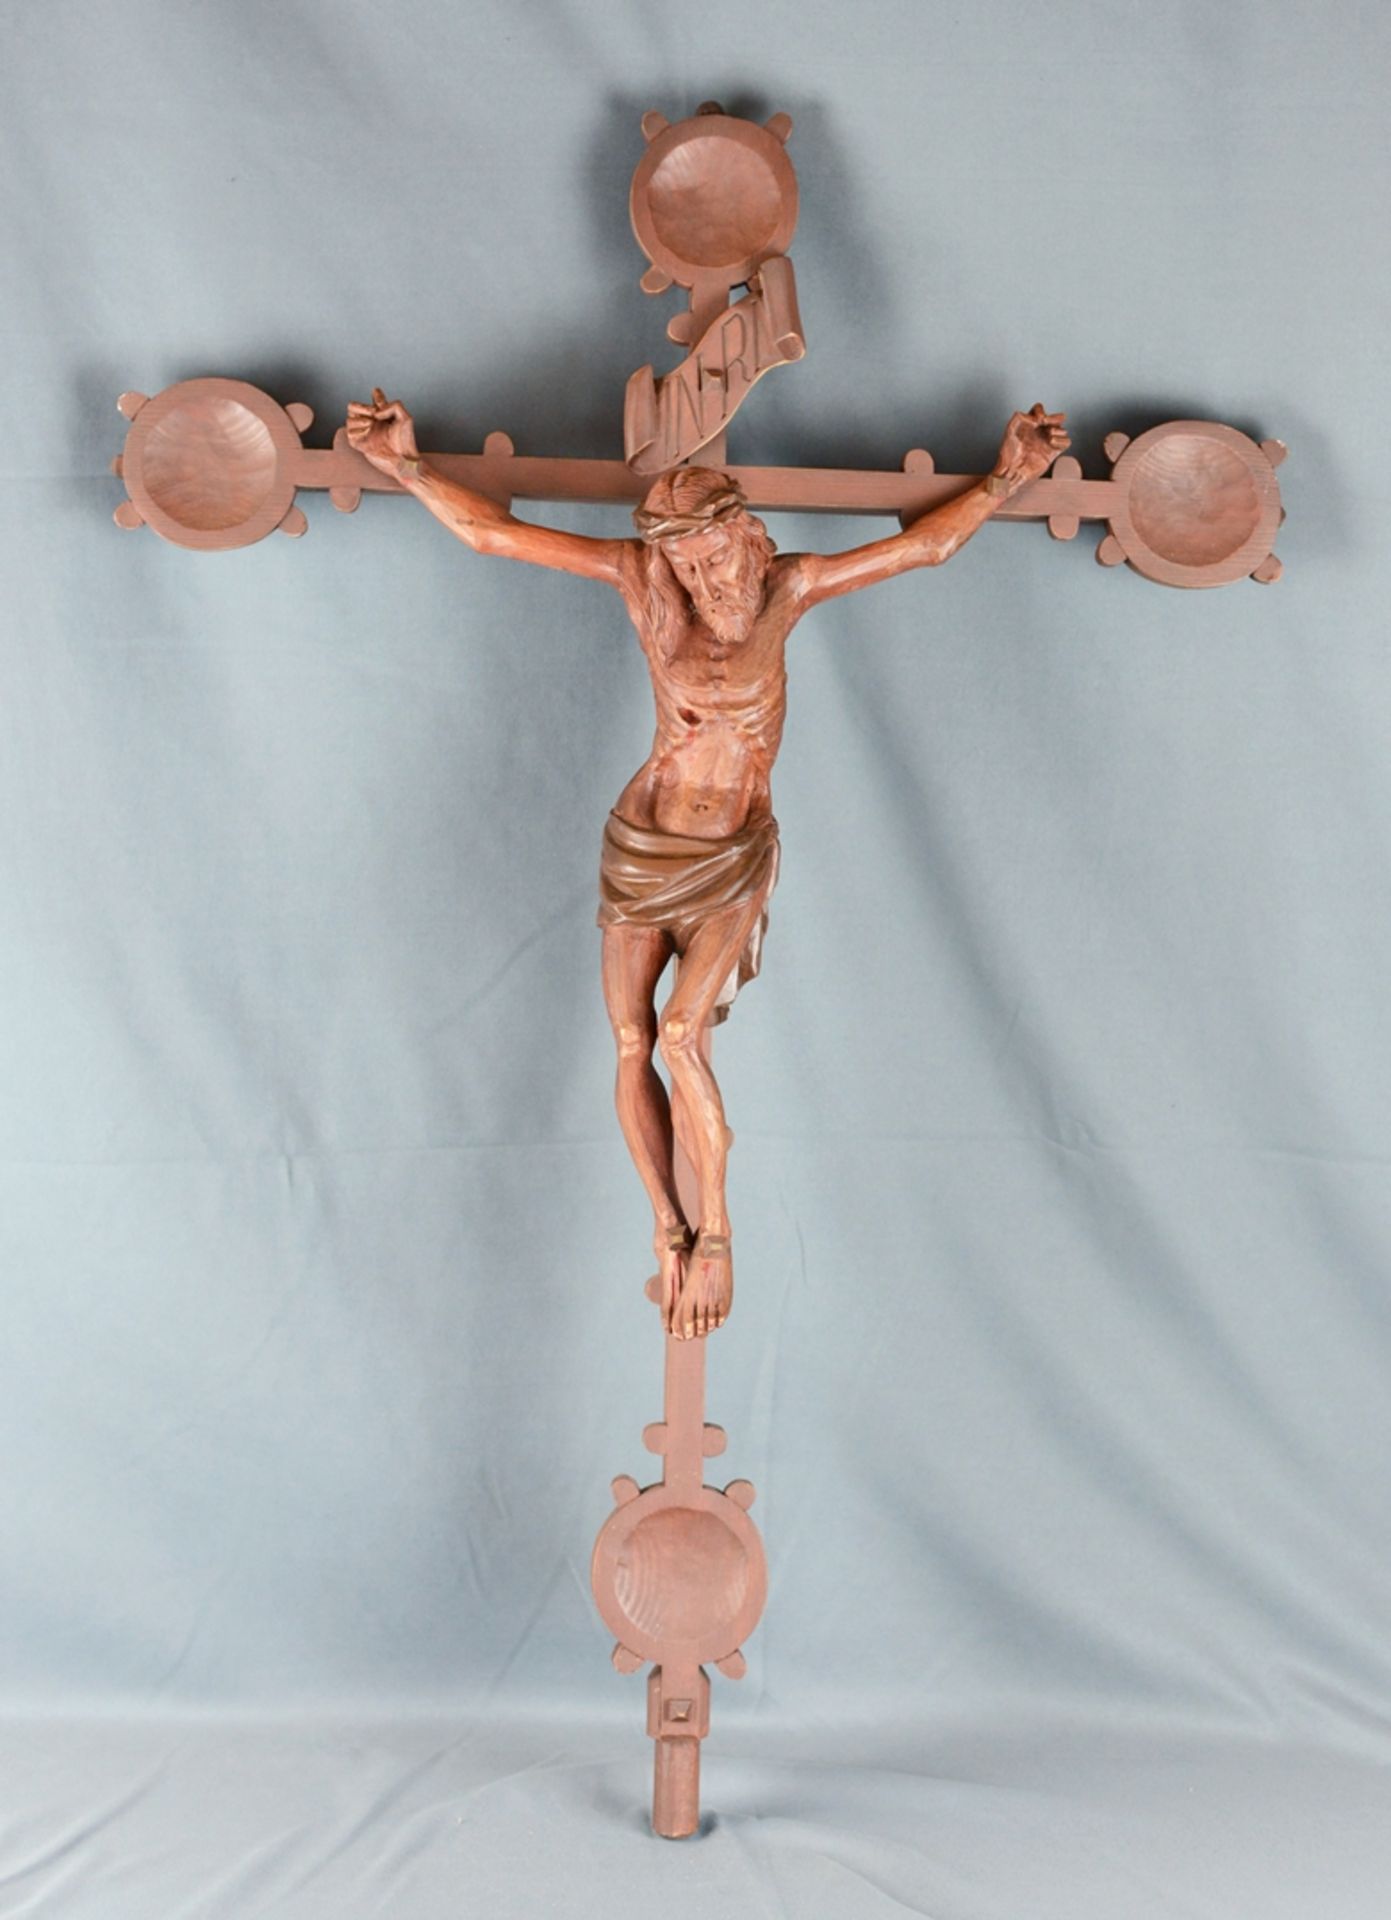 Kruzifix gekreuzigter Christus, über seinem Kopf Schriftzug "INRI", Kreuz mit kreisförmigen